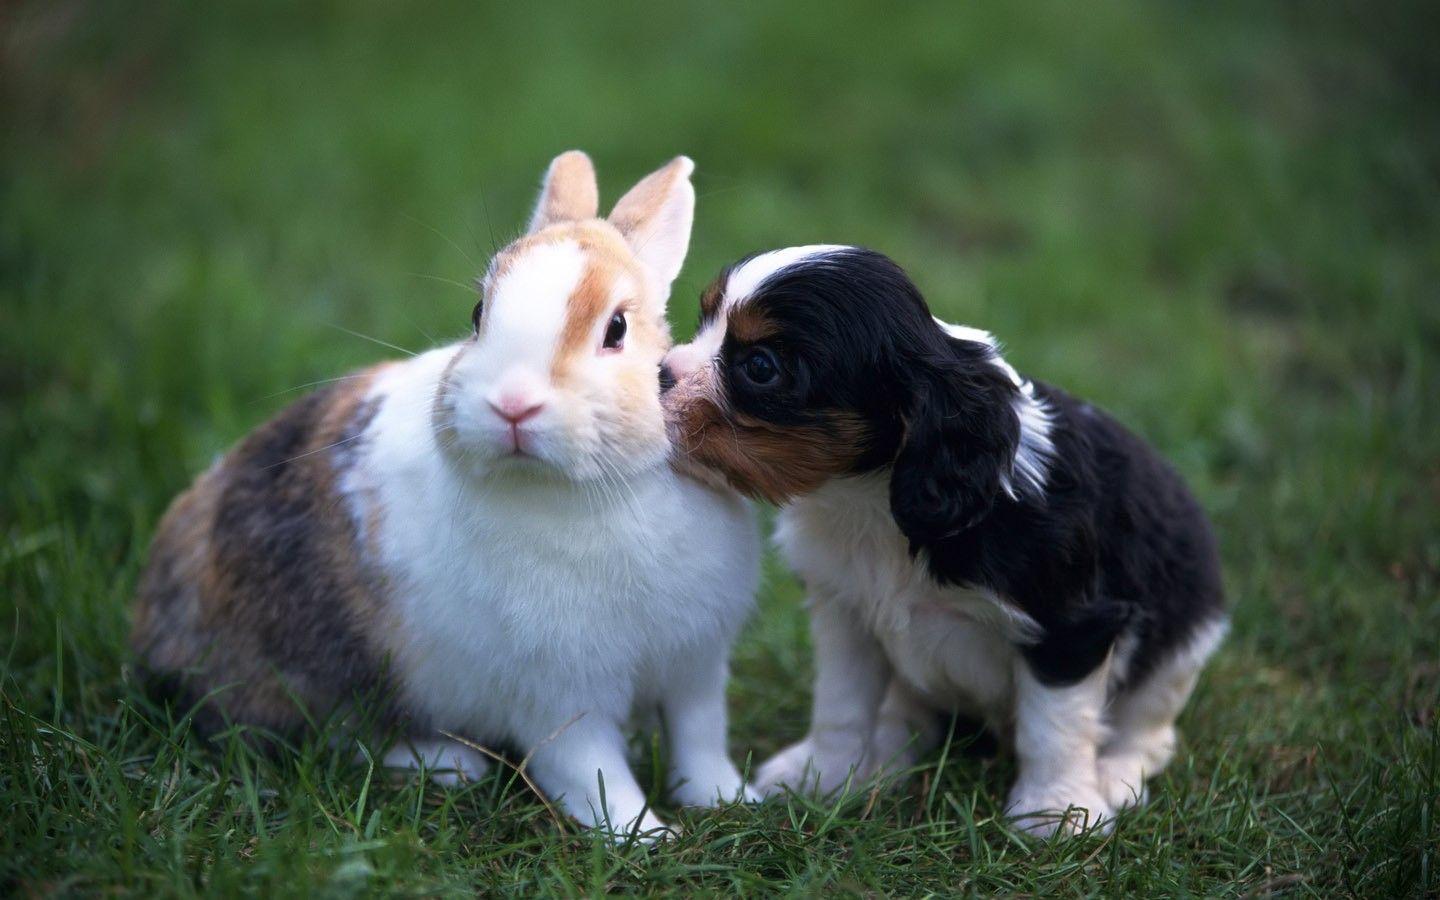 تصویر زیبا از خرگوش های وحشی از گونه خرگوش پیراهنی 